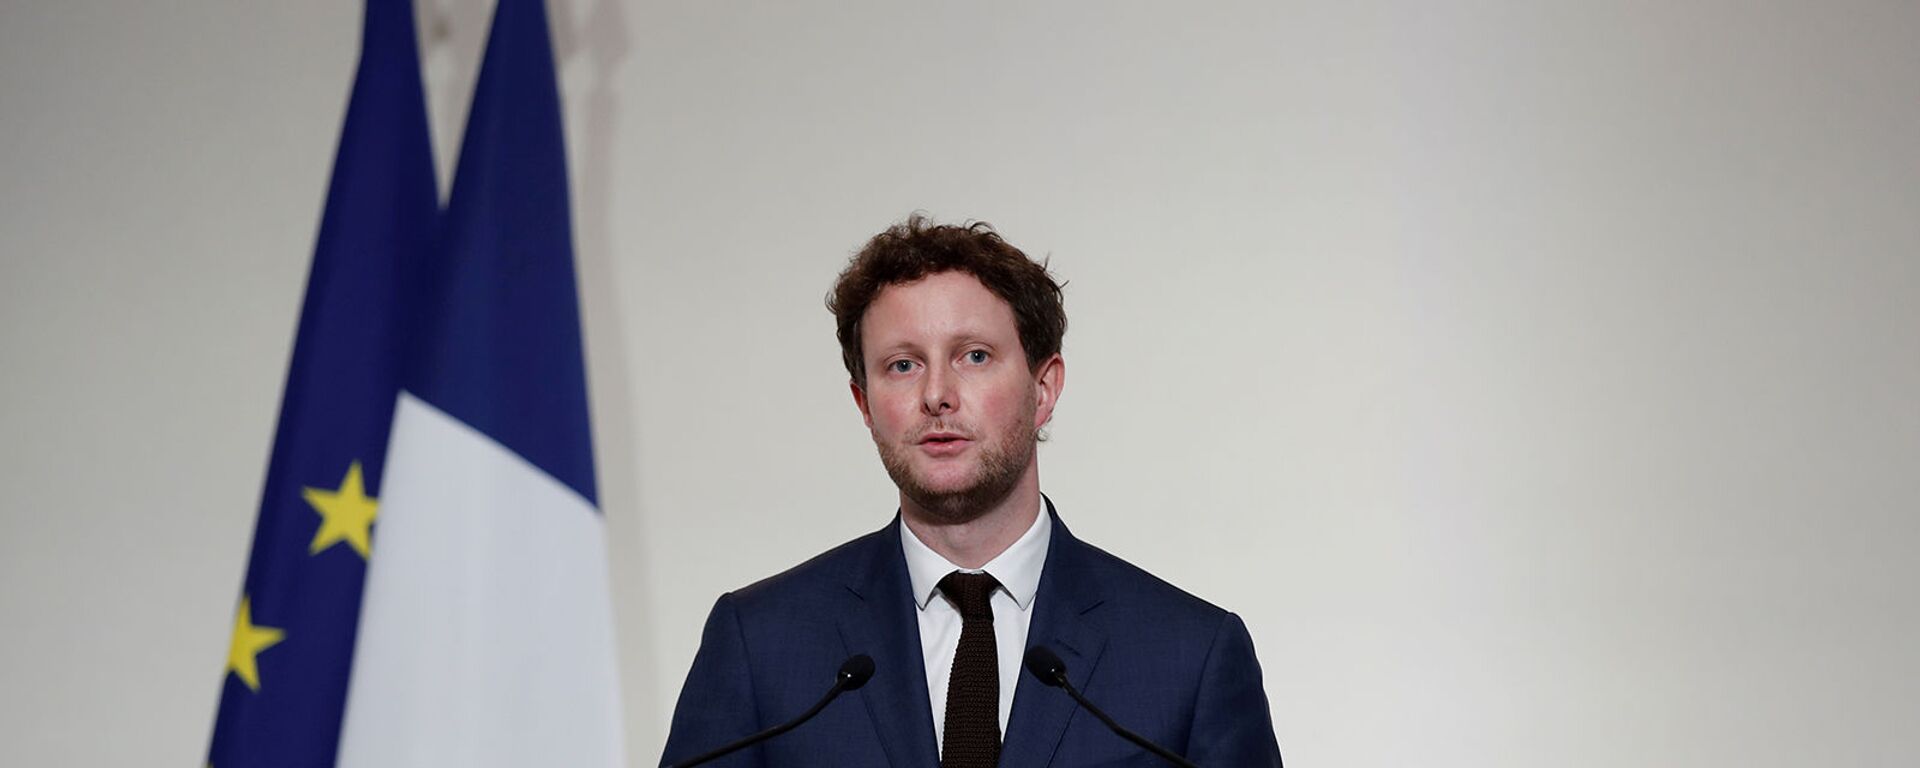 Младший министр Франции по европейским делам Клеман Бон на пресс-конференции (3 декабря 2020). Париж - Sputnik Армения, 1920, 13.04.2021